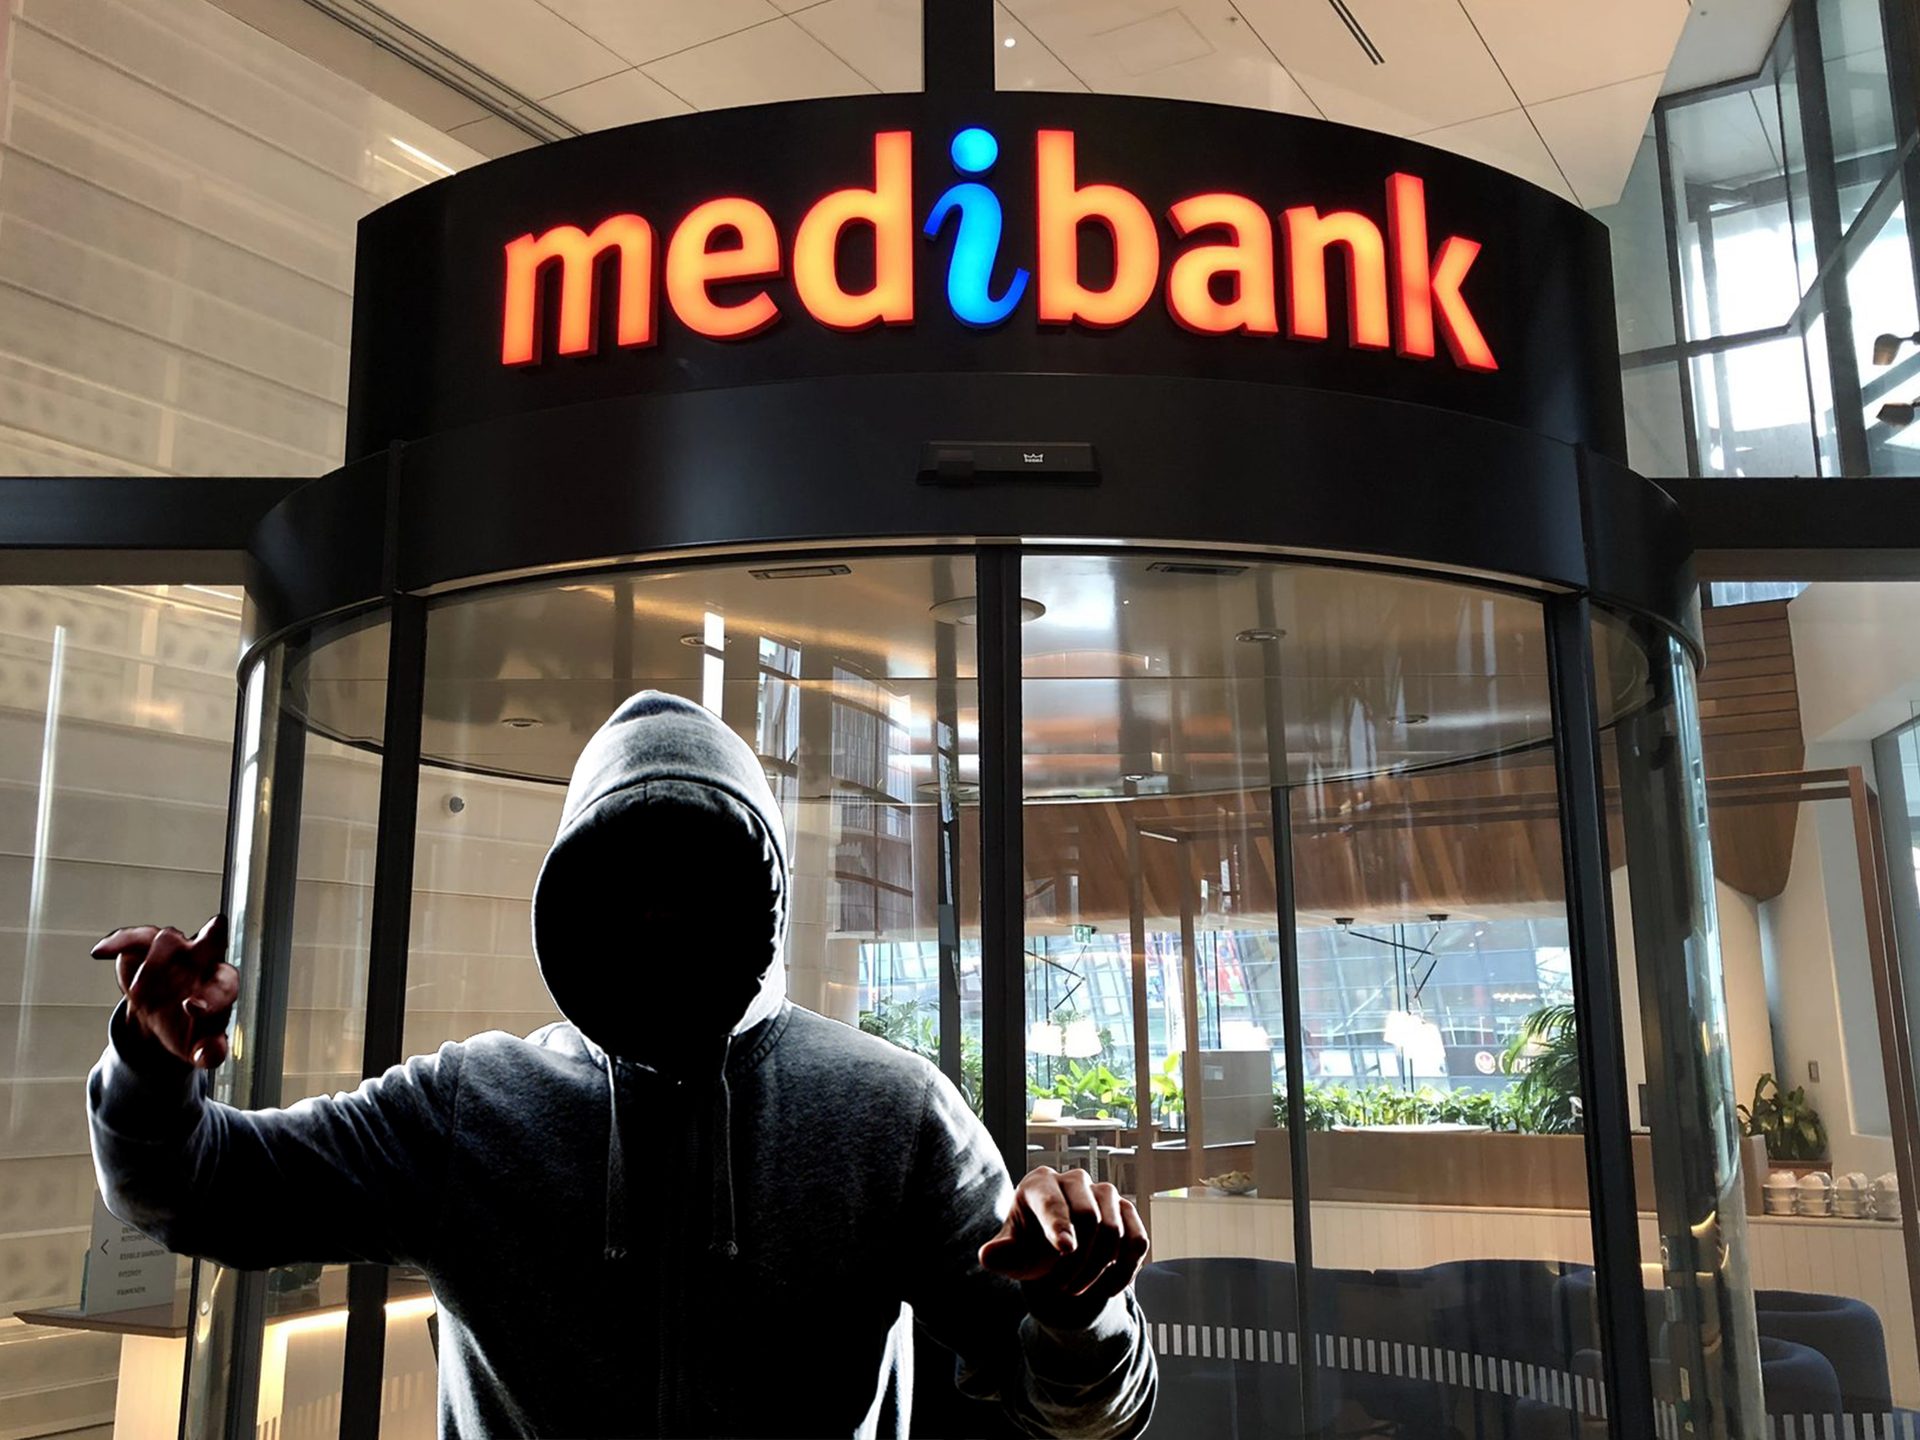 Ação coletiva do Medibank explicada: lembre-se da violação de dados do Medibank, junte-se à ação coletiva de violação de dados do Medibank e obtenha uma compensação do Medibank de até $ 20,000.